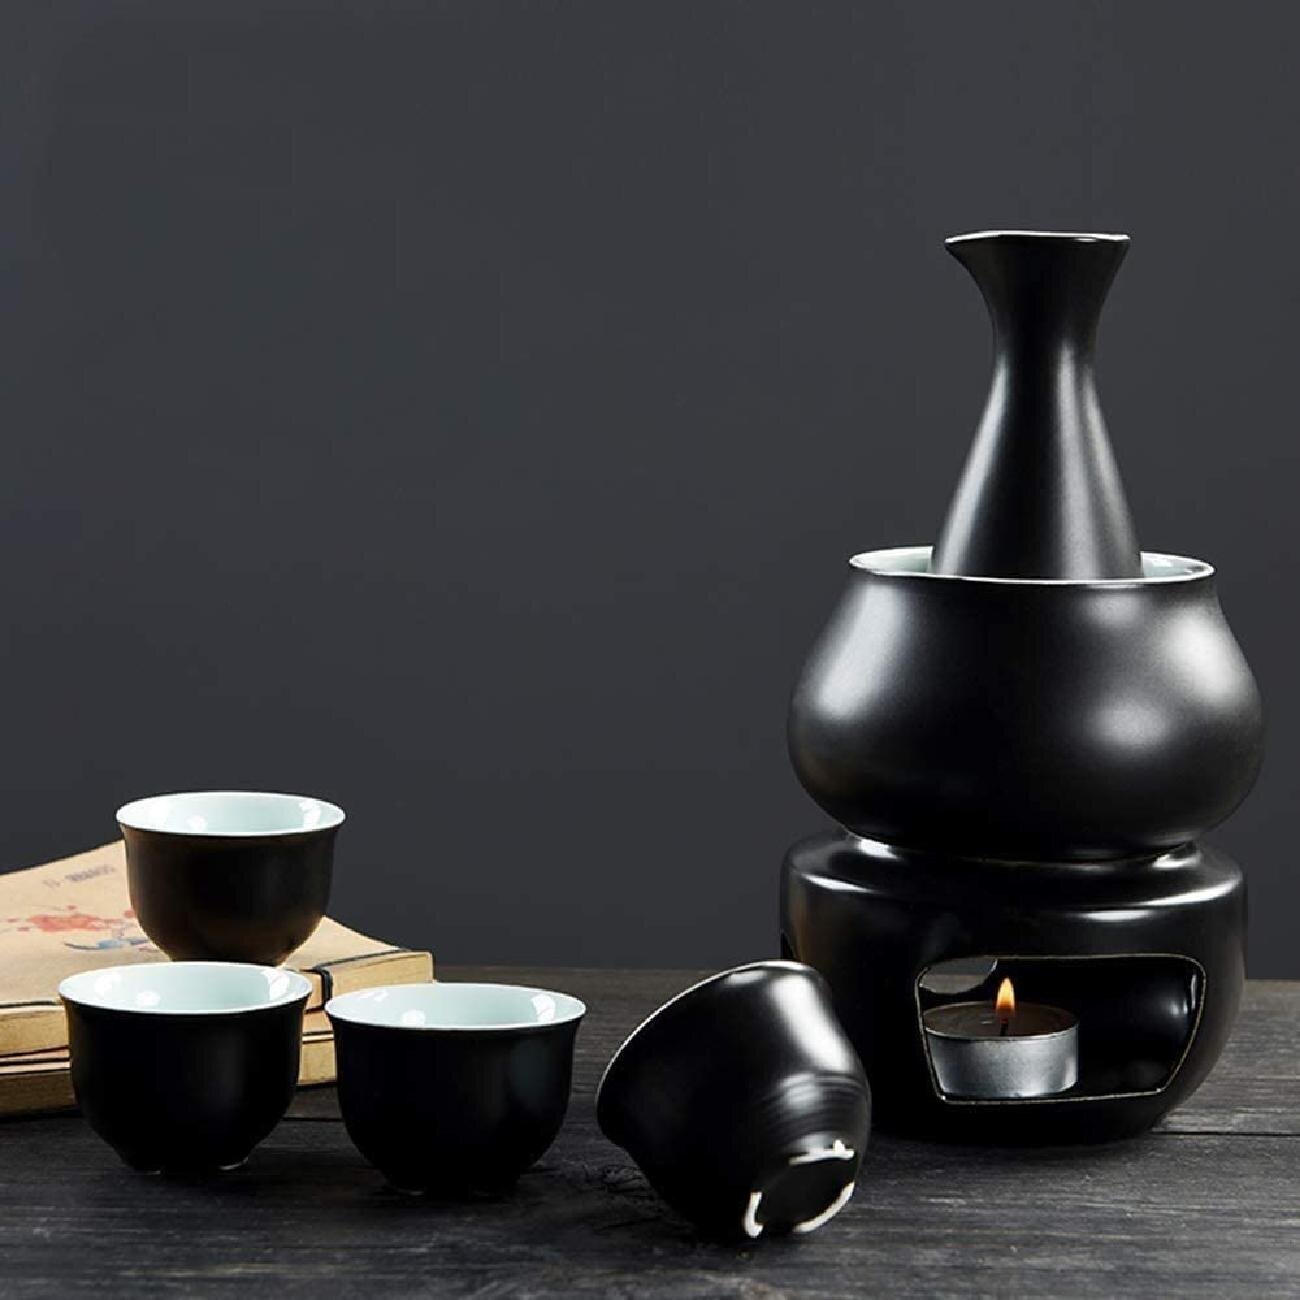 MKYOKO Ceramic Sake Set, Sake Set with Warmer, Traditional Hot Saka Set  9-Piece Including 1Pc Warming Mug, 1Pc Sake Pot, 6Pcs Sake Cups and  Electric